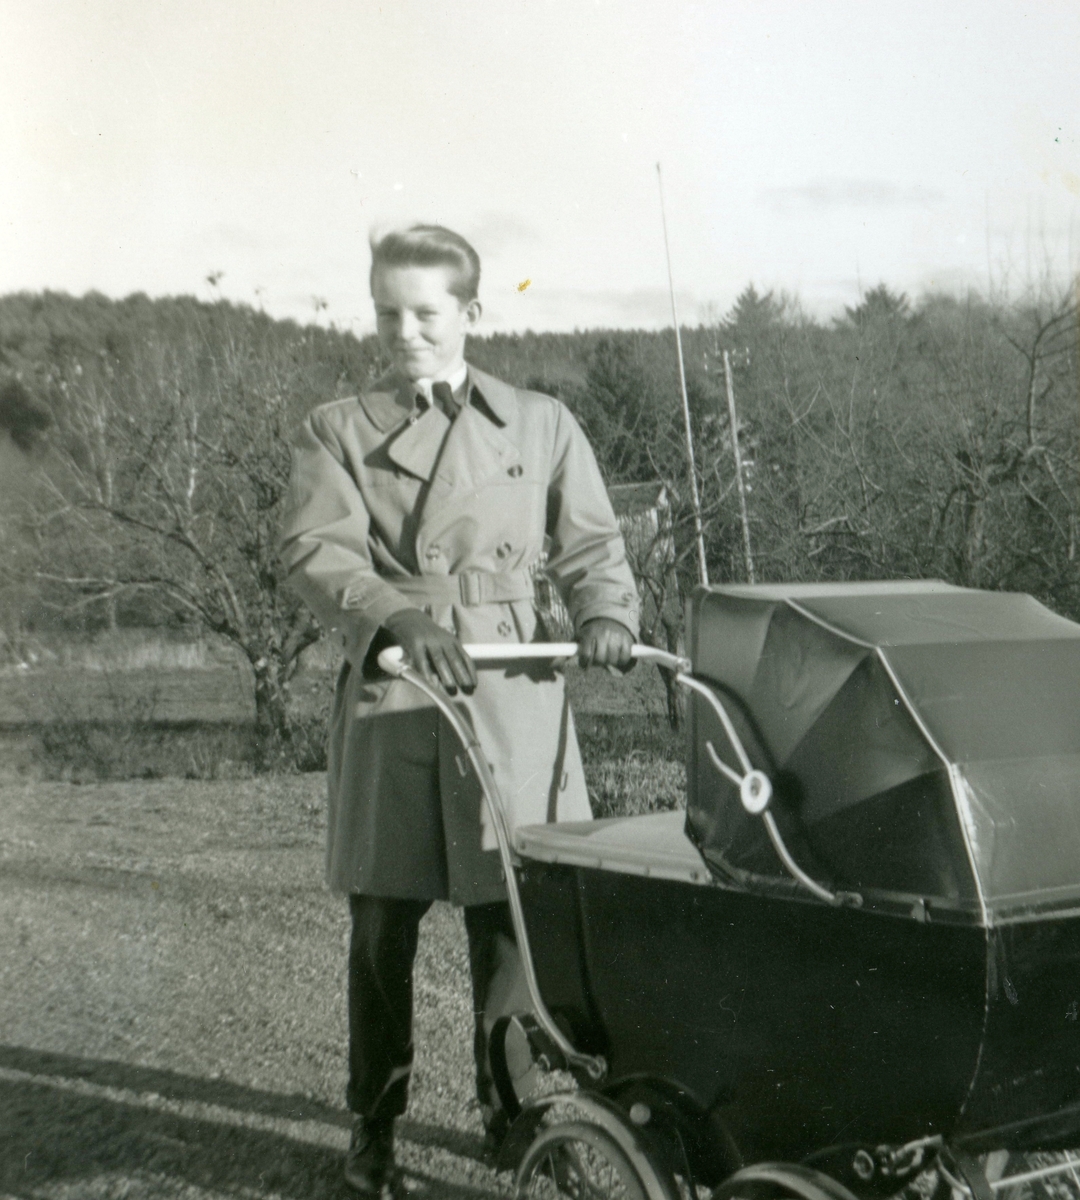 Hösten 1955 utanför Rothvalls hus på Streteredsvägen 31 i Kållered. Den stolta storebrodern "Uffen" (Ulf-Göran) Ekman kör barnvagnen med lille Manne liggandes i.